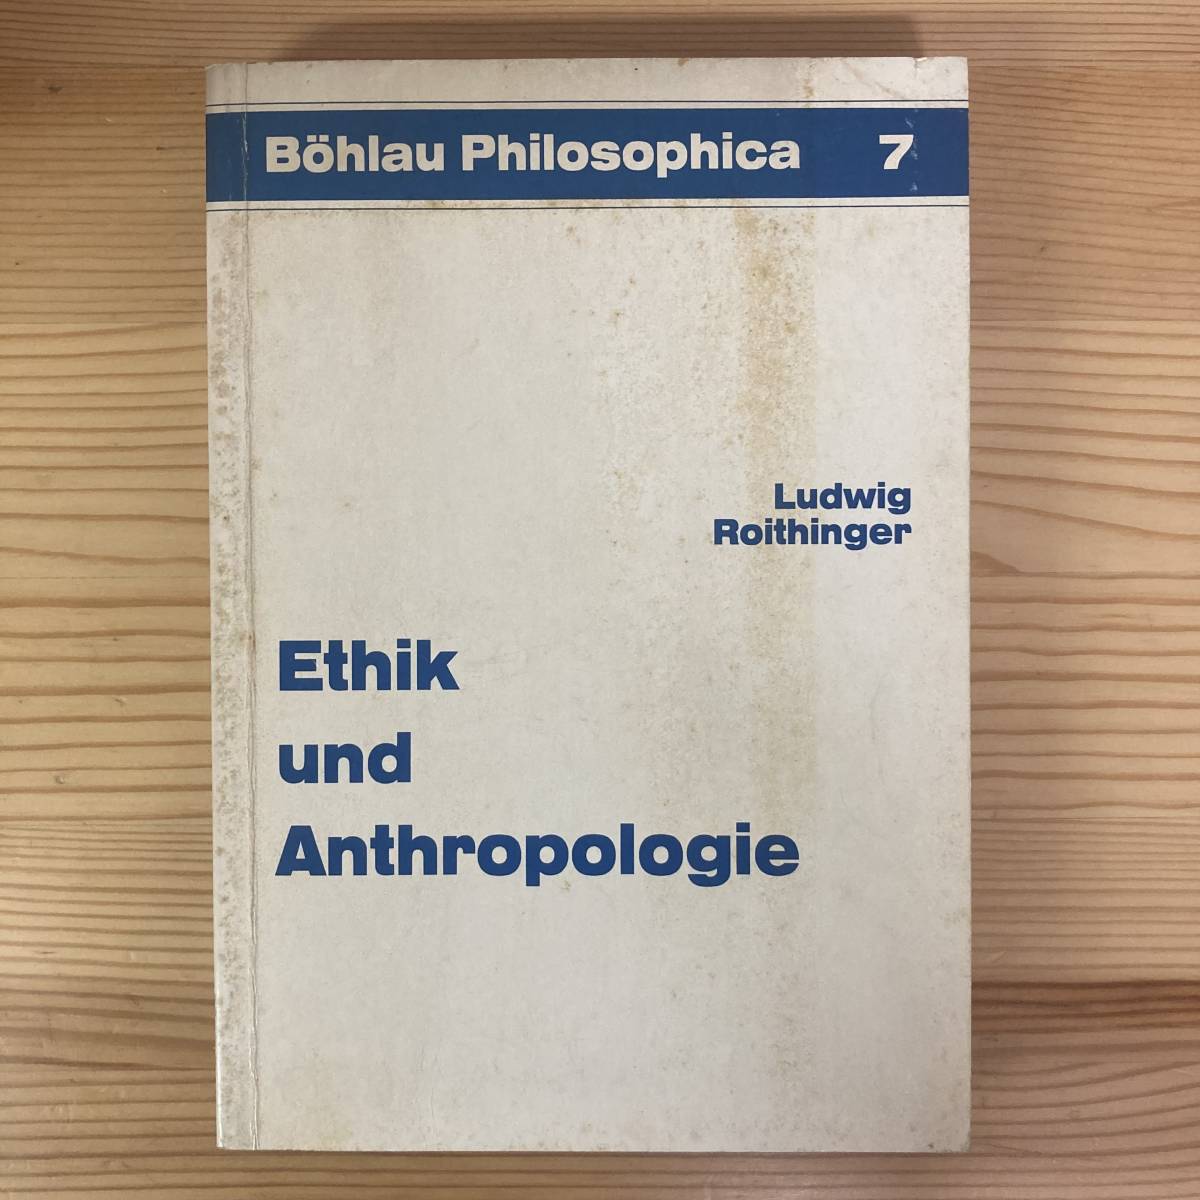 【独語洋書】Ethik und Anthropologie / Ludwig Roithinger（著）【倫理学 人類学】の画像1